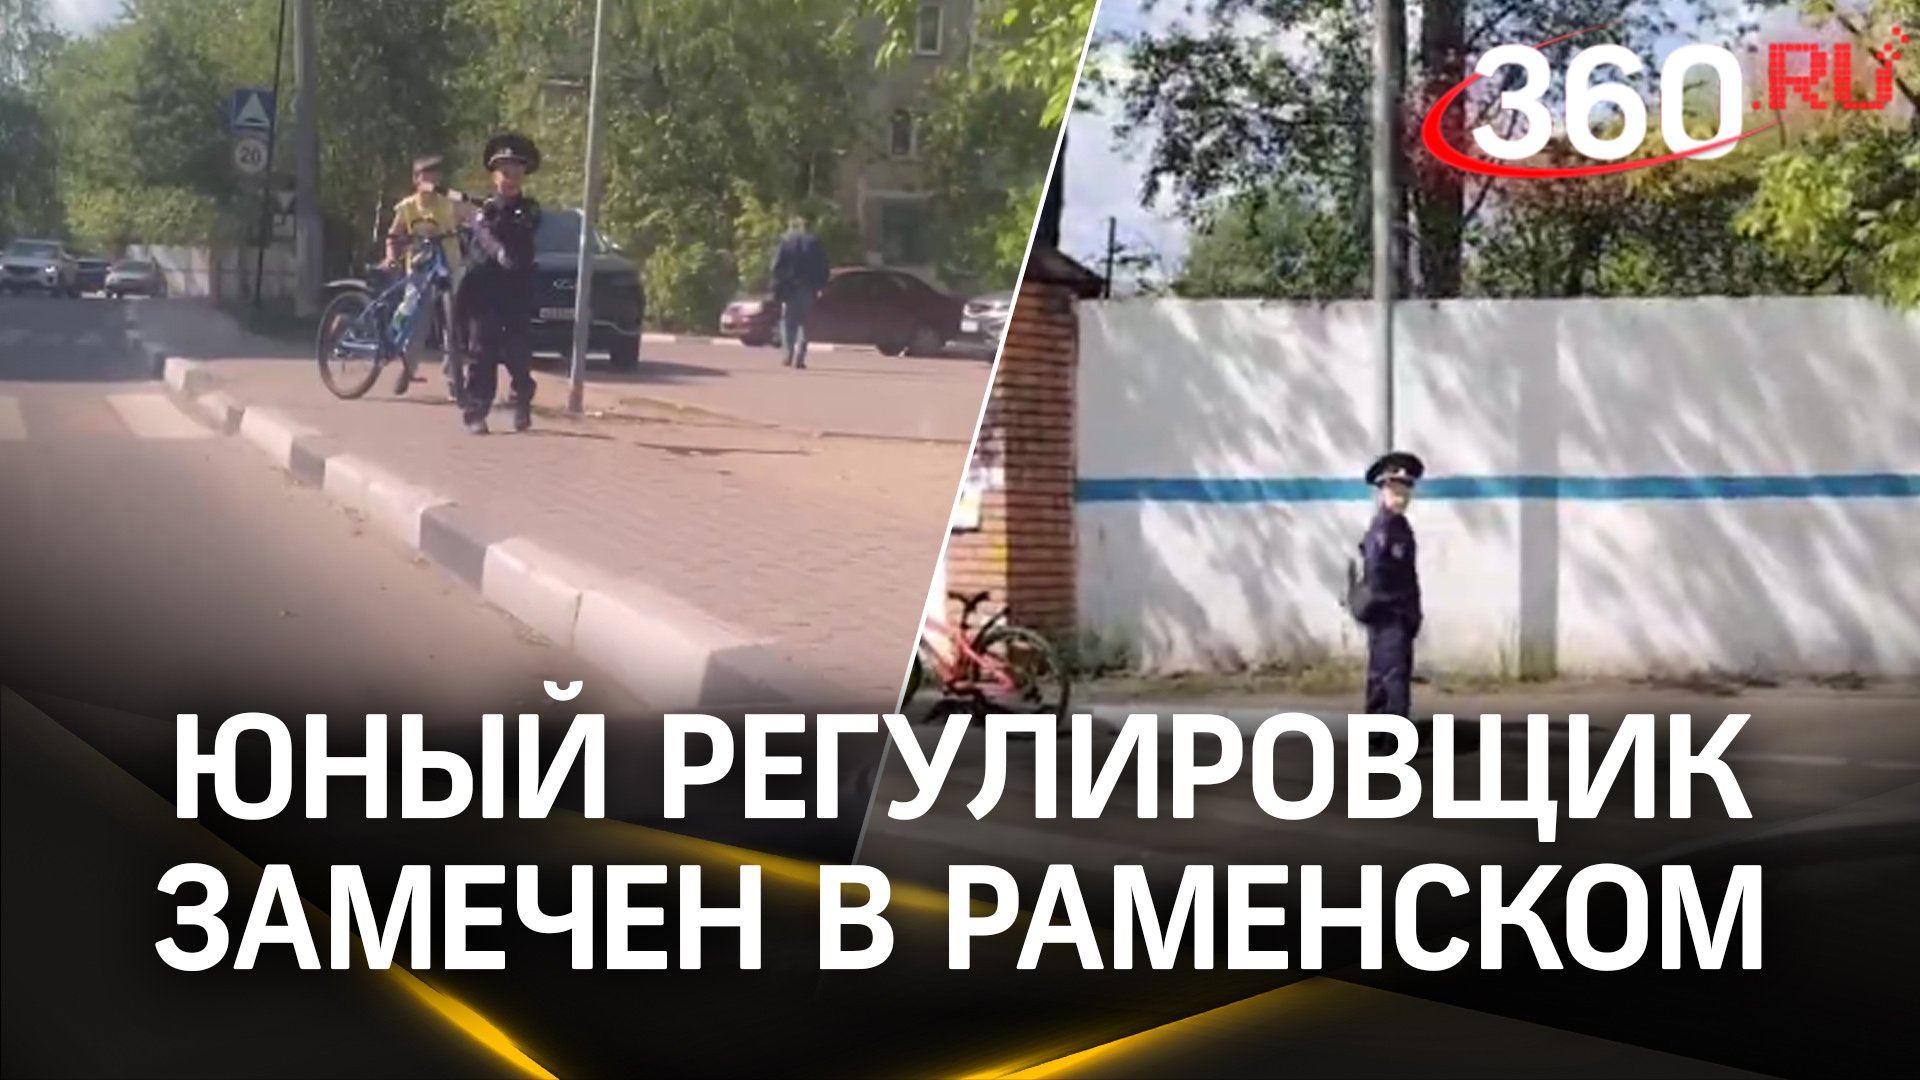 «Здравия желаю!»: в Раменском появился юный сотрудник ГИБДД